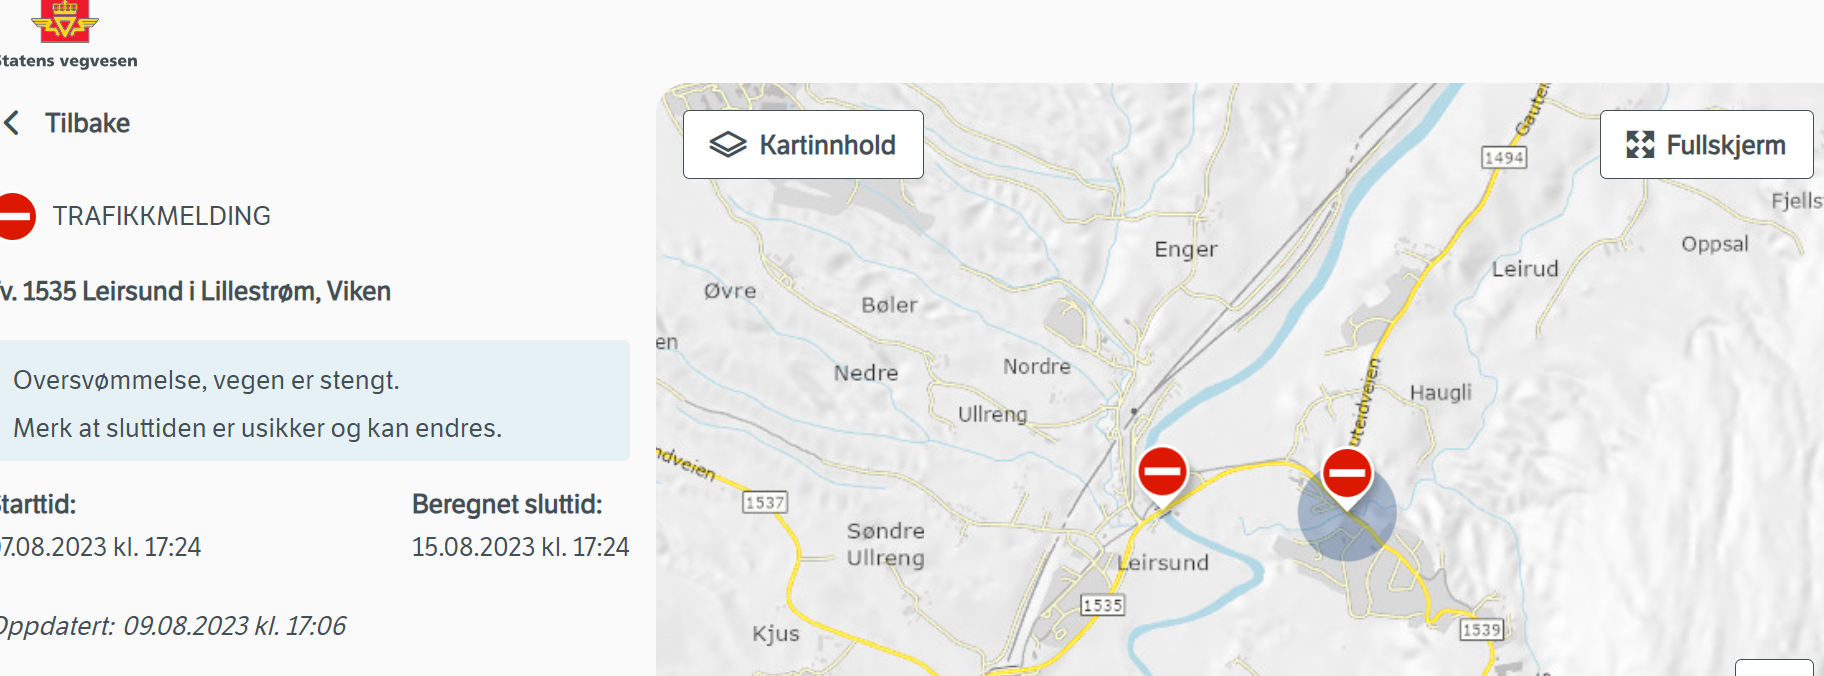 Sytuacja jest bardzo dynamiczna, a stan zamkniętych dróg na bieżąco należy sprawdzać na stronie Statens vegvesen